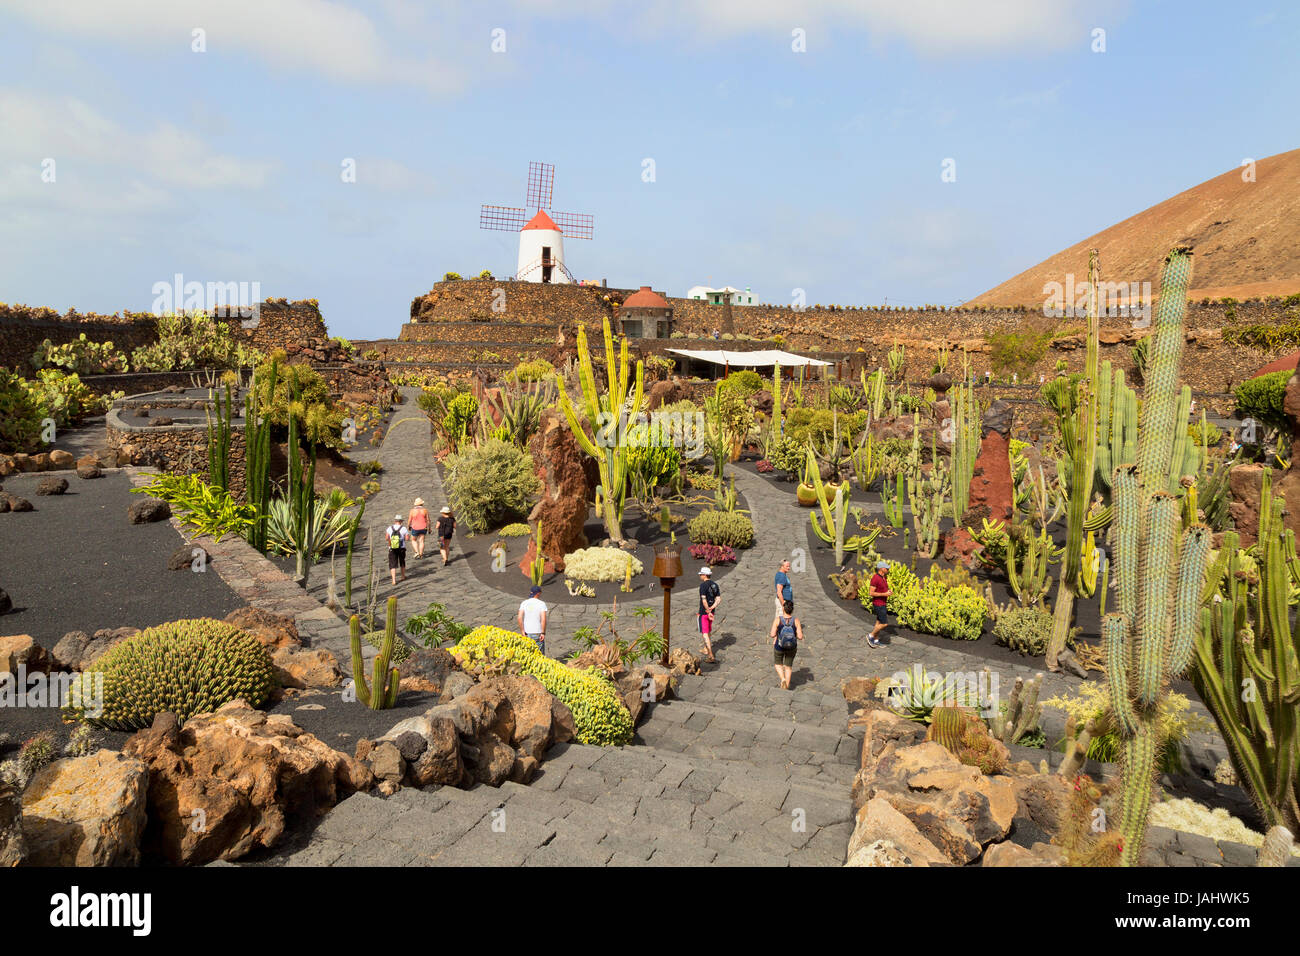 Lanzarote Cactus Garden or Jardin de Cactus, designed by local artist Cesar Manrique, Lanzarote, Canary Islands, Europe Stock Photo